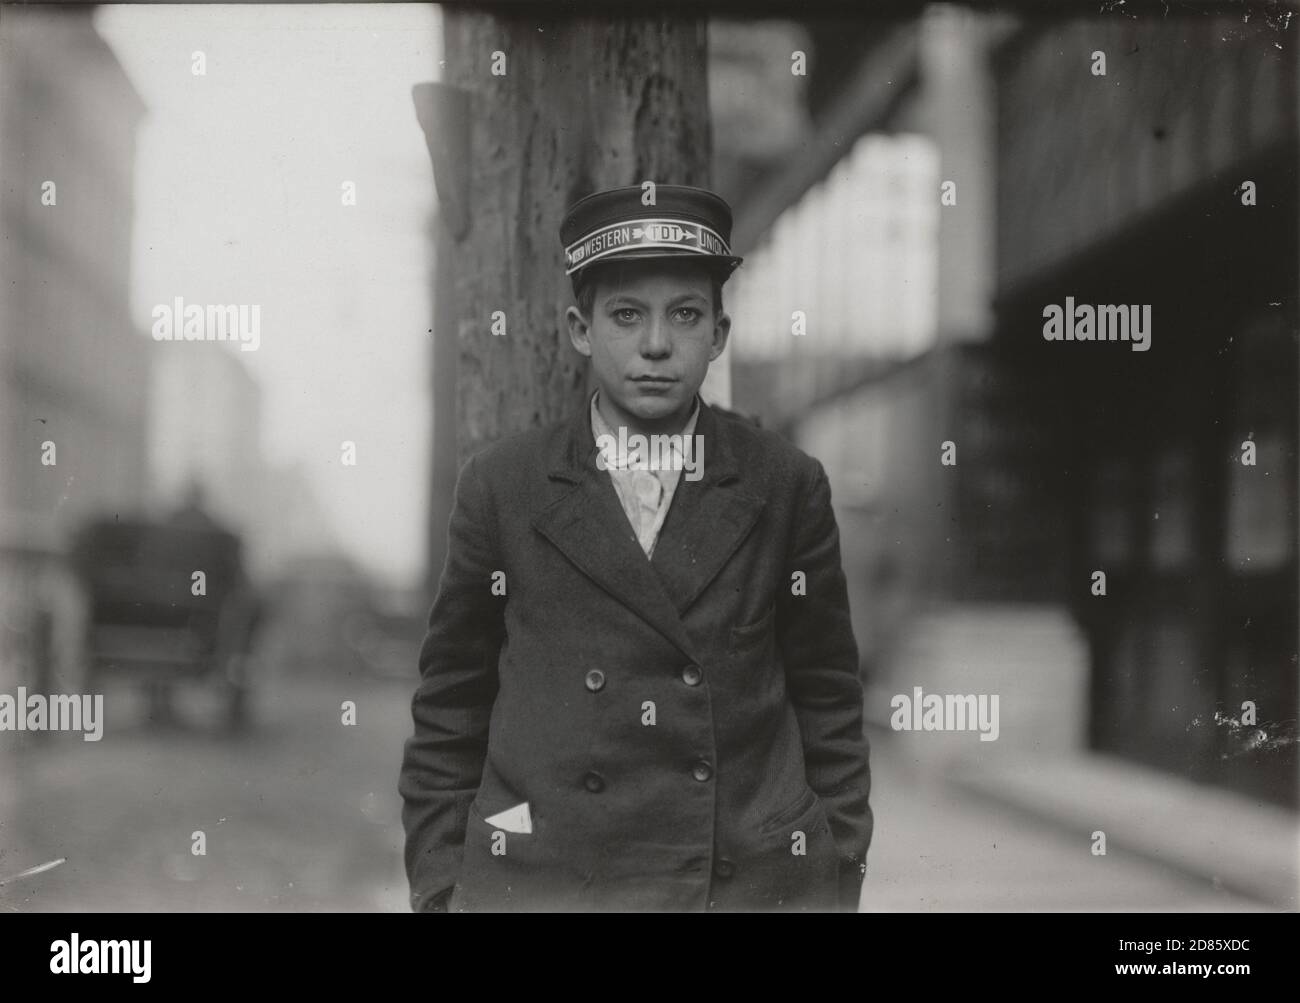 Foto d'epoca, Lewis W. Hine - Richard Tuck, 13 anni Western Union Messenger, Mezza lunghezza Ritratto, Nashville, Tennessee, USA Novembre 1910 Foto Stock